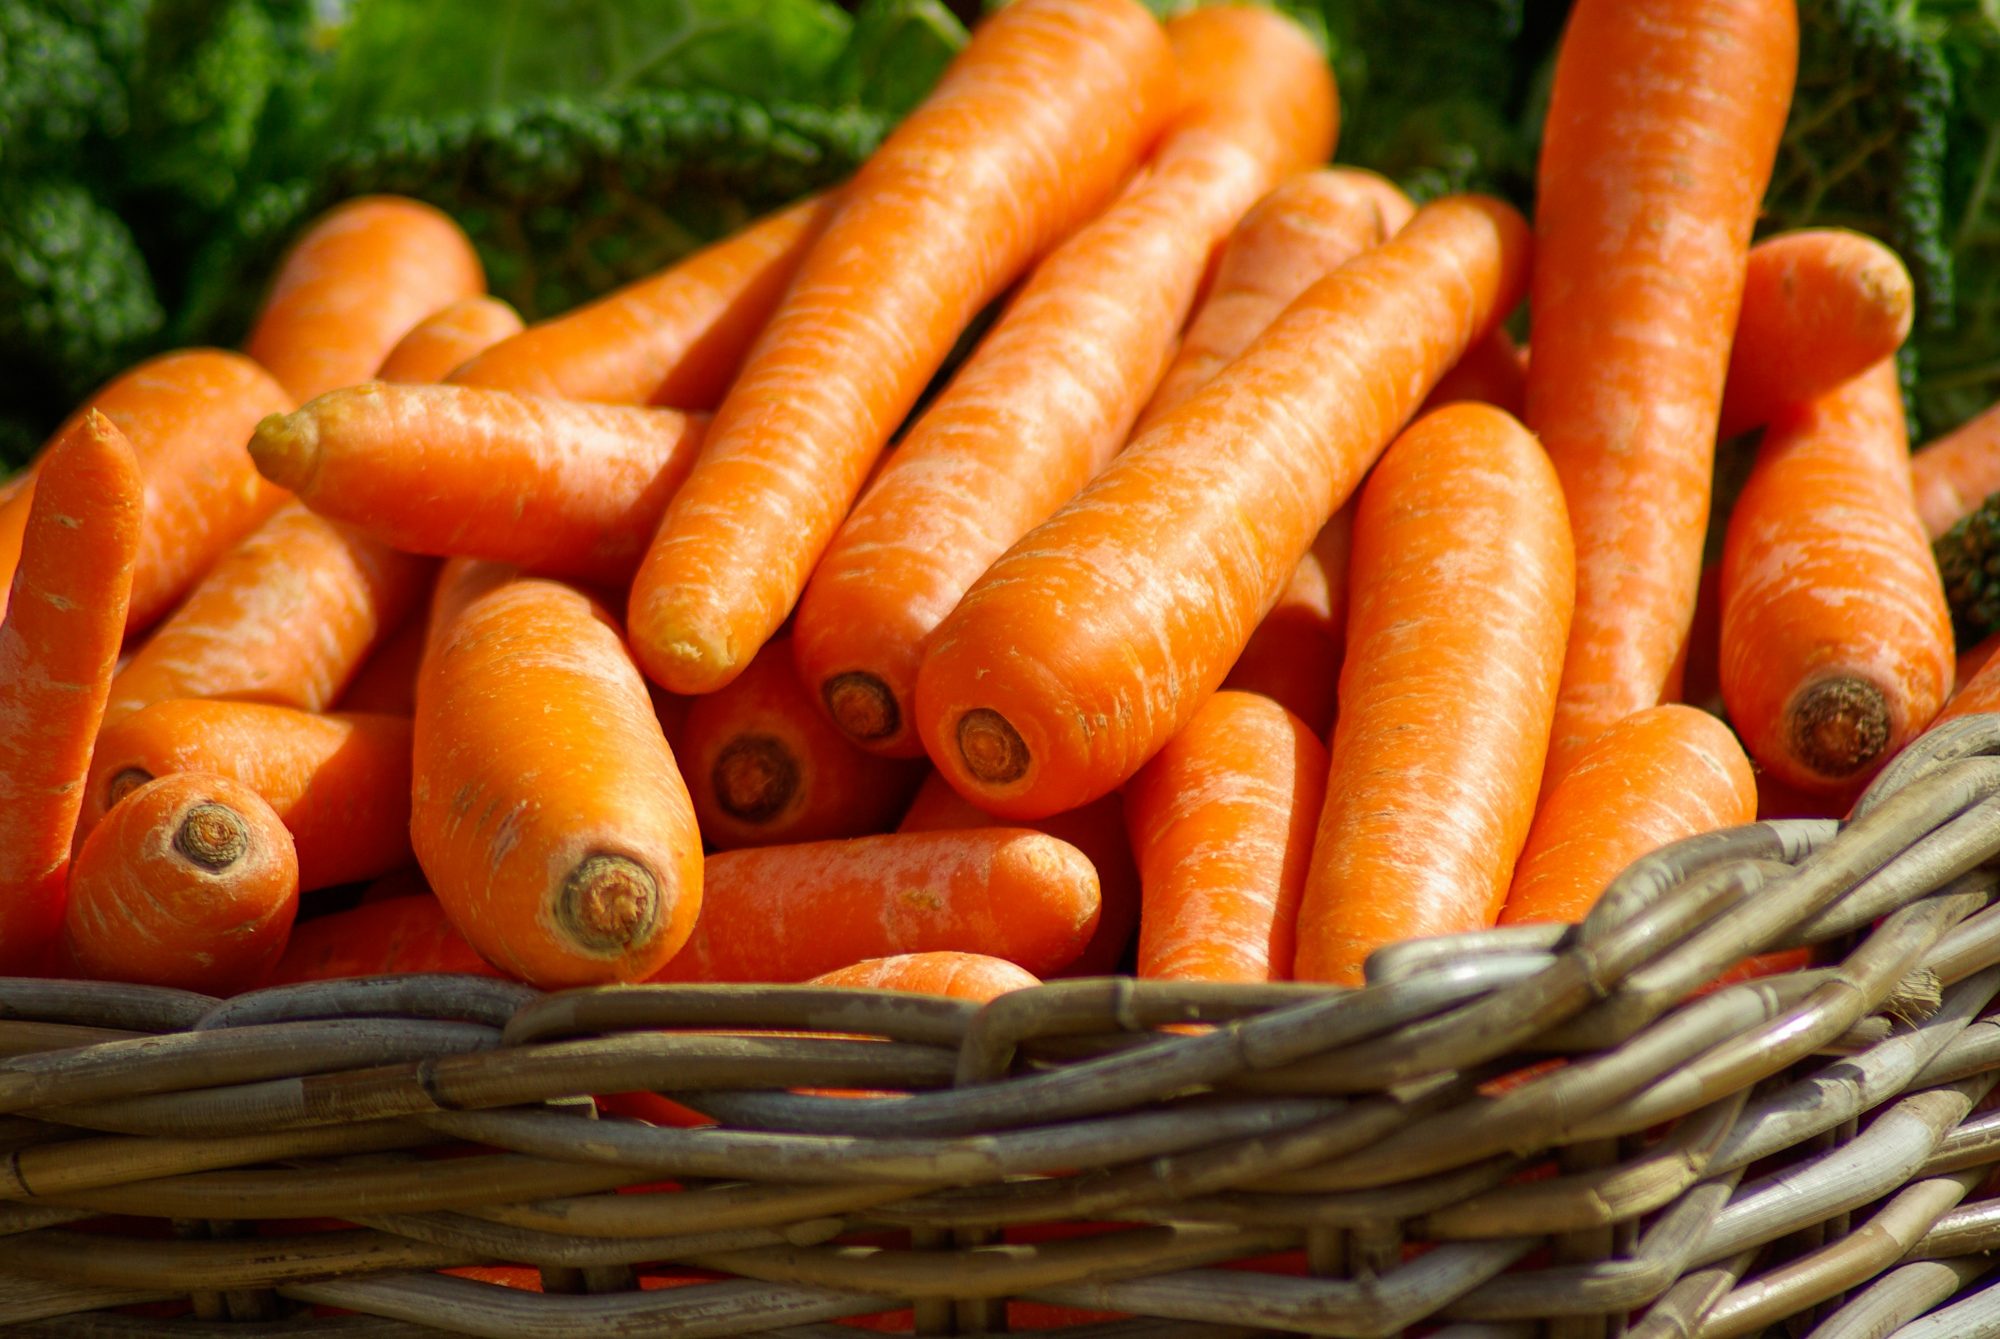 carrots-basket-vegetables-market-37641.jpeg